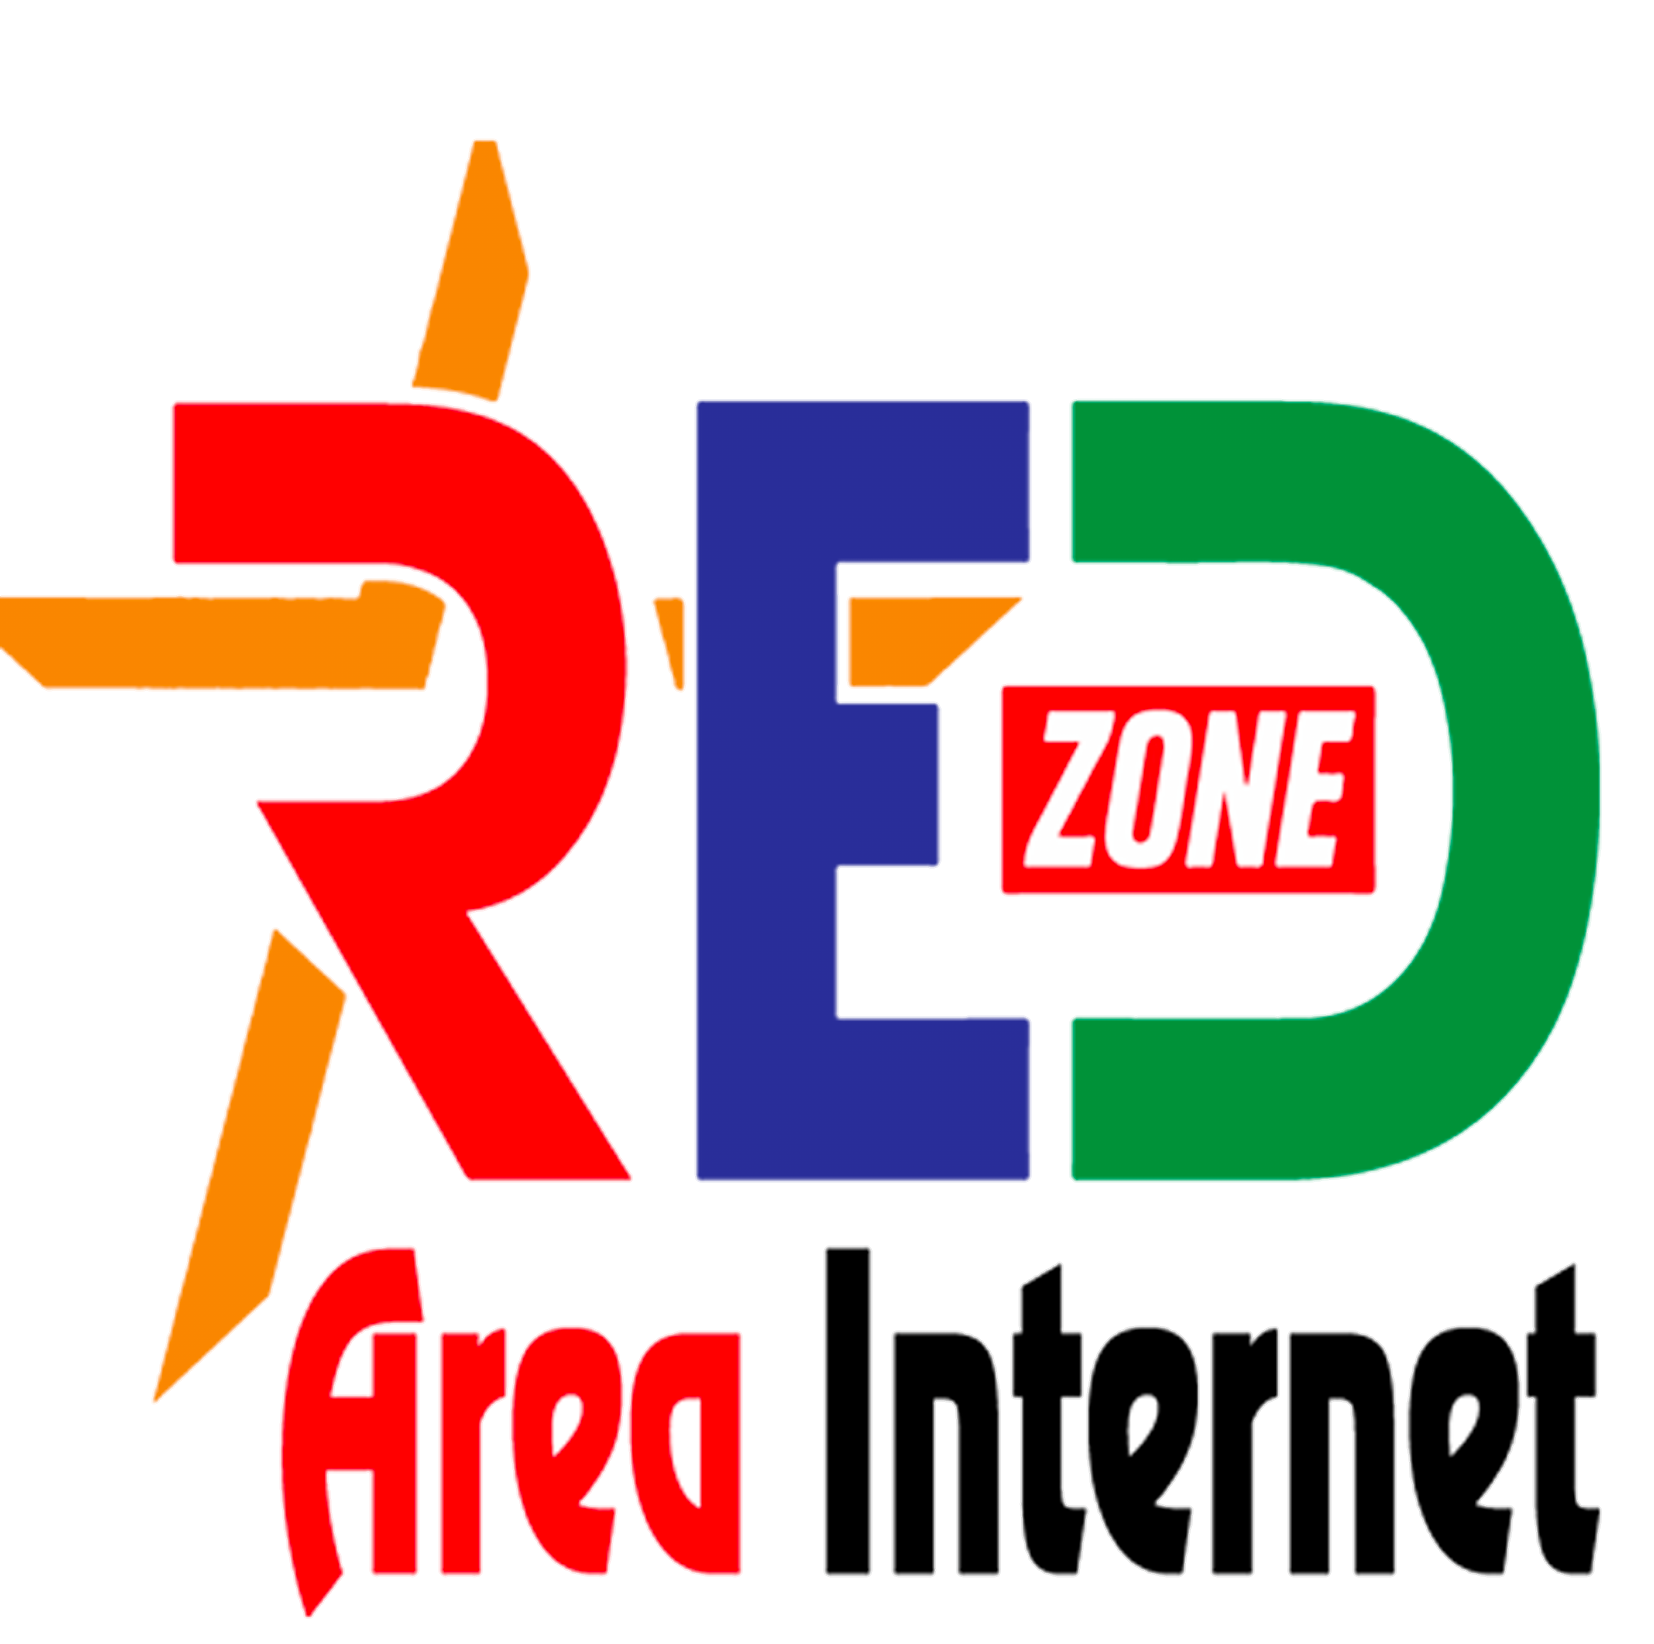 Red Zone Online Limited -  দুলালপুর ইউনিয়ন ইন্টারনেট প্রবর্তক-logo